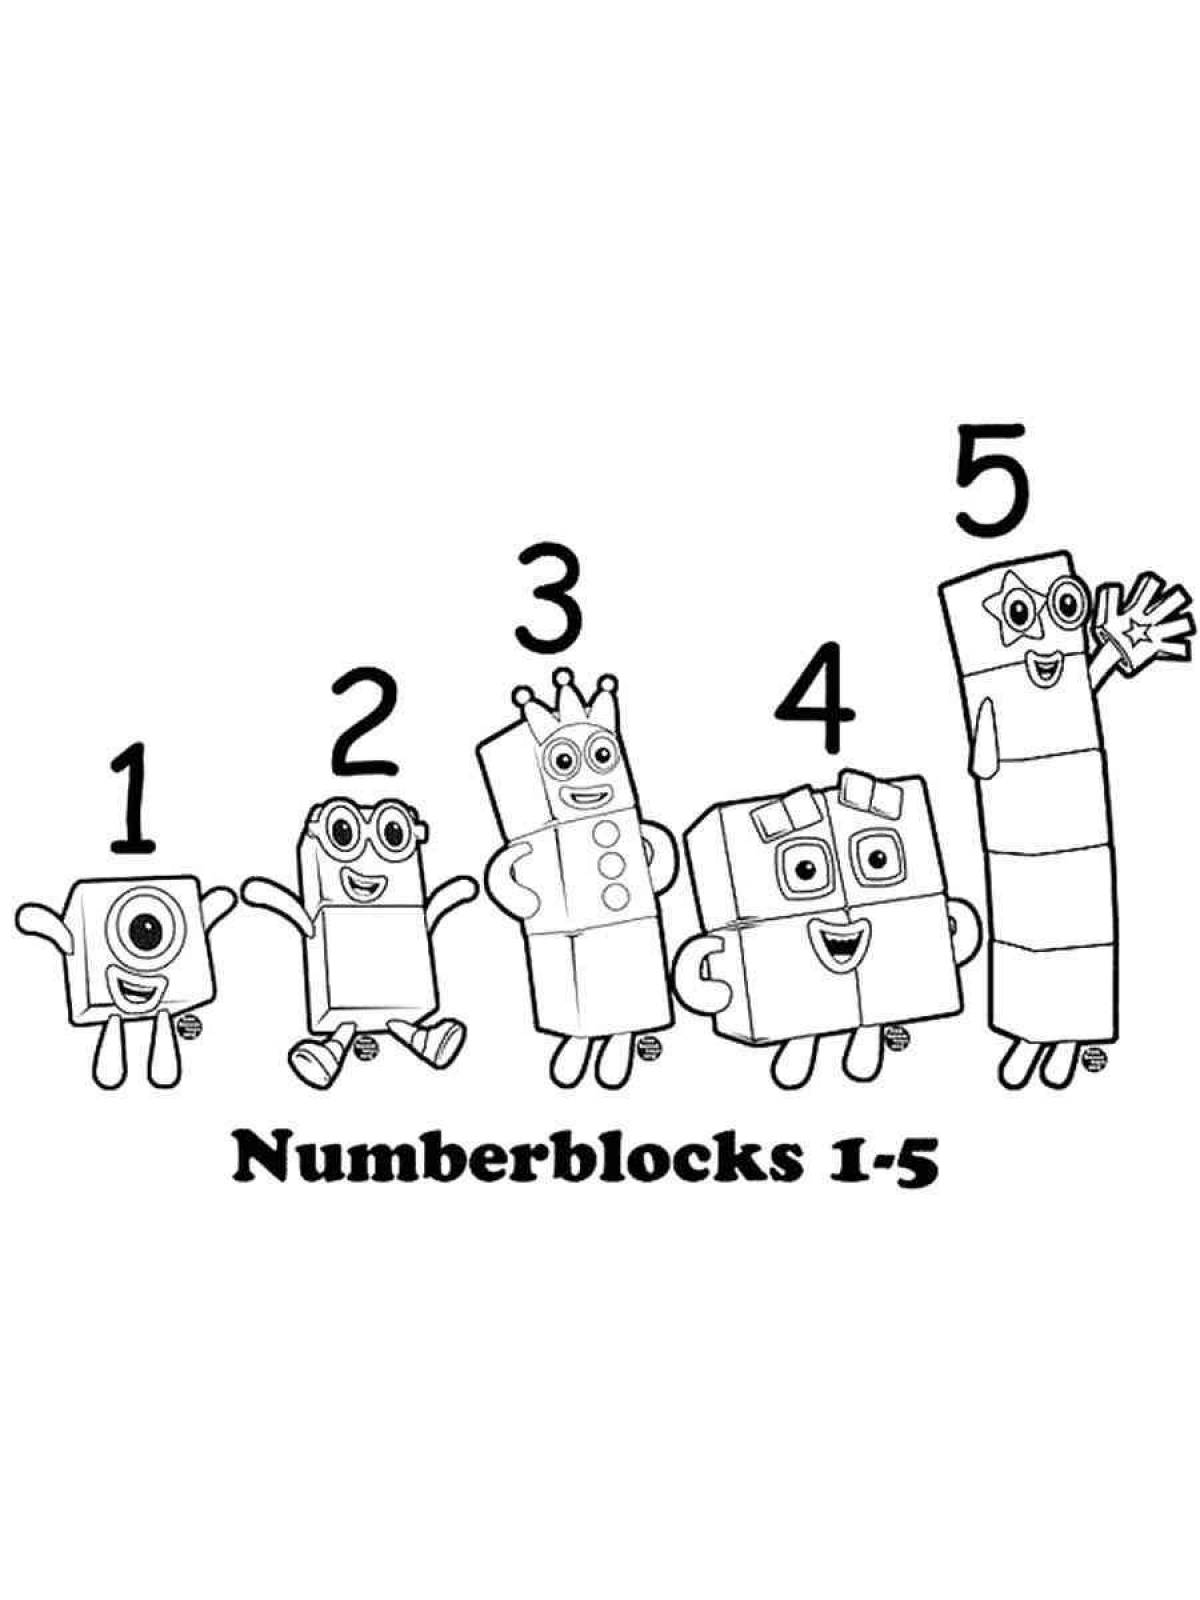 Numberblocks #22